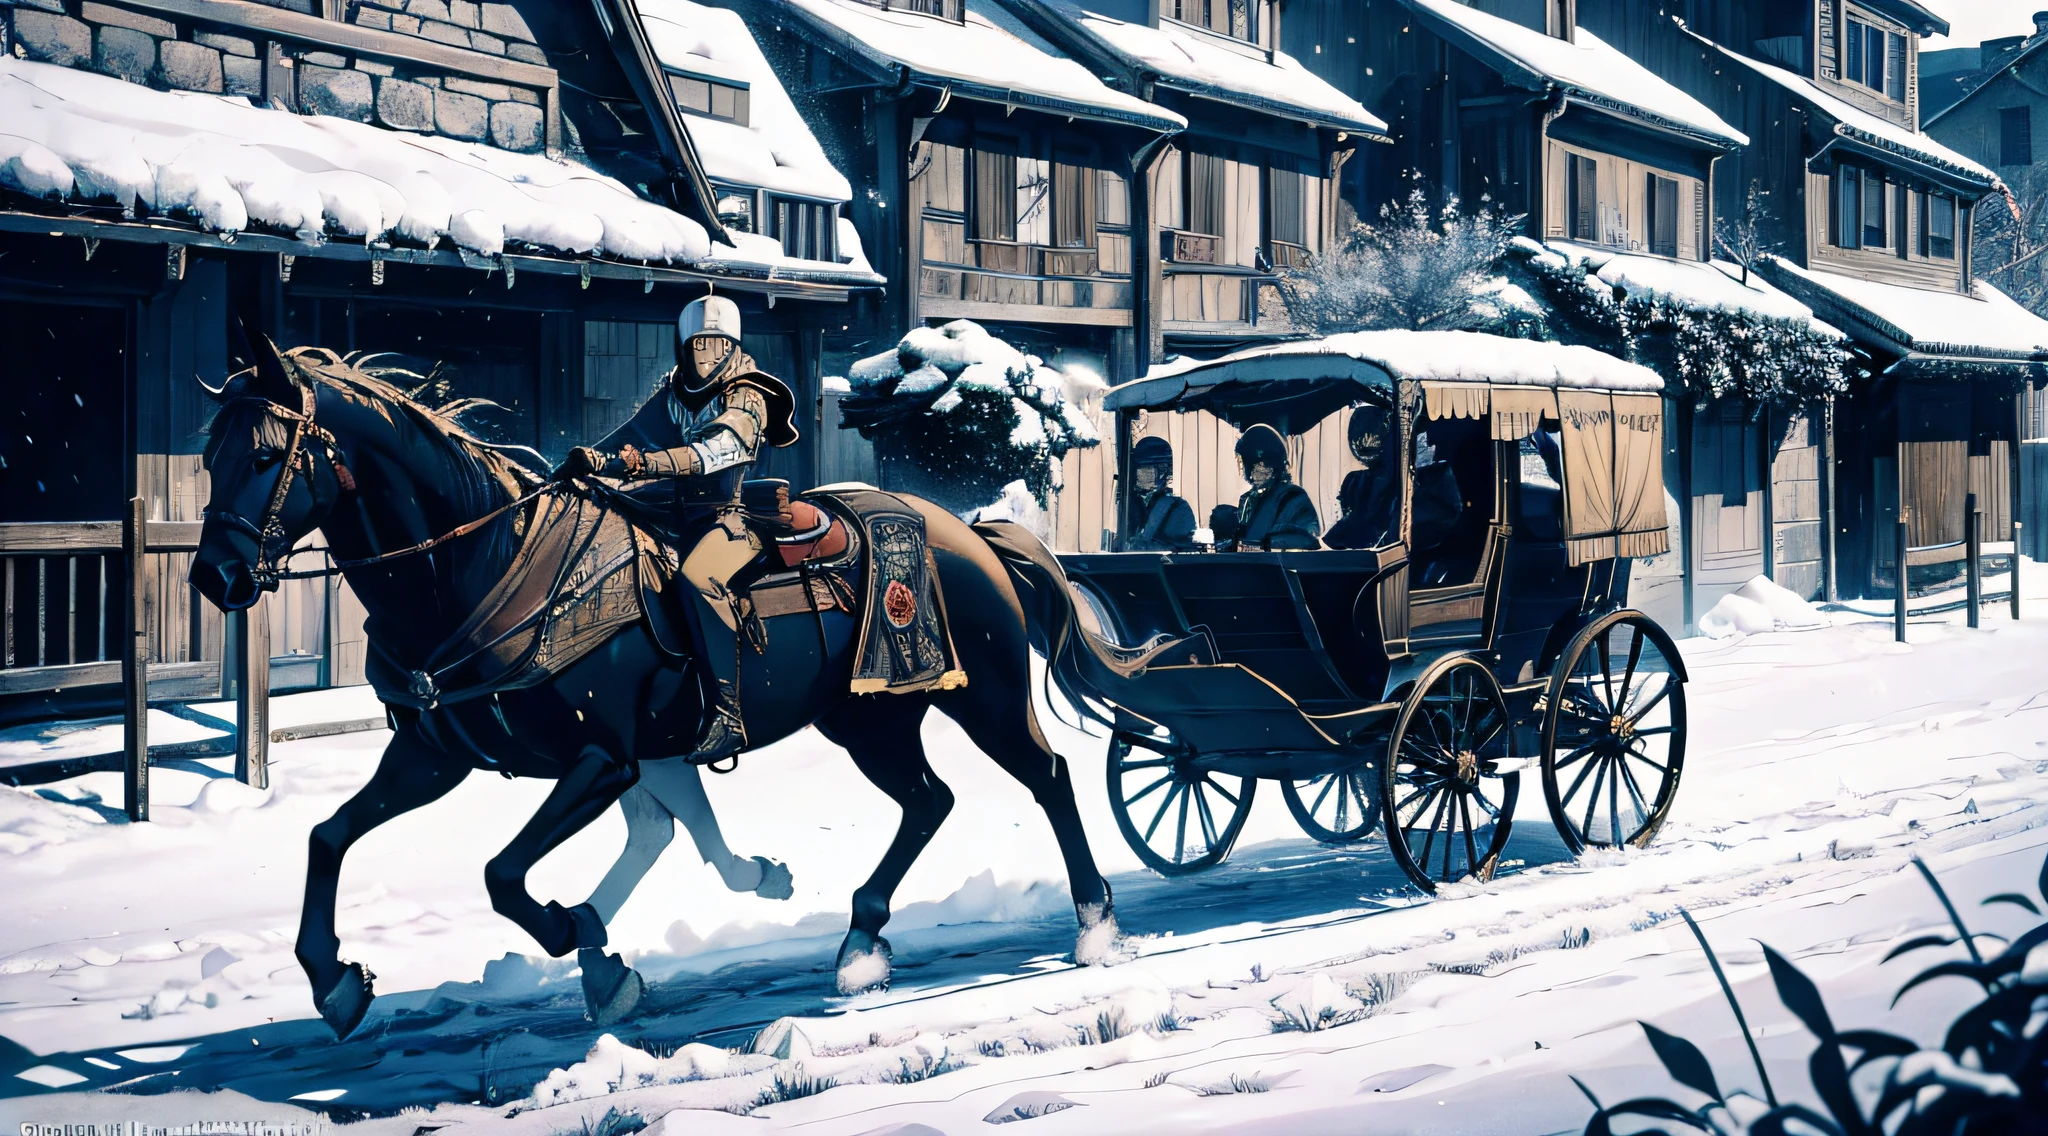 "動態漫畫風格的藝術作品描繪了一個男性角色騎著馬車穿過熙熙攘攘的中世紀村莊, 攜帶必需的食品供應. 細緻的陰影和複雜的細節增強了視覺衝擊力."